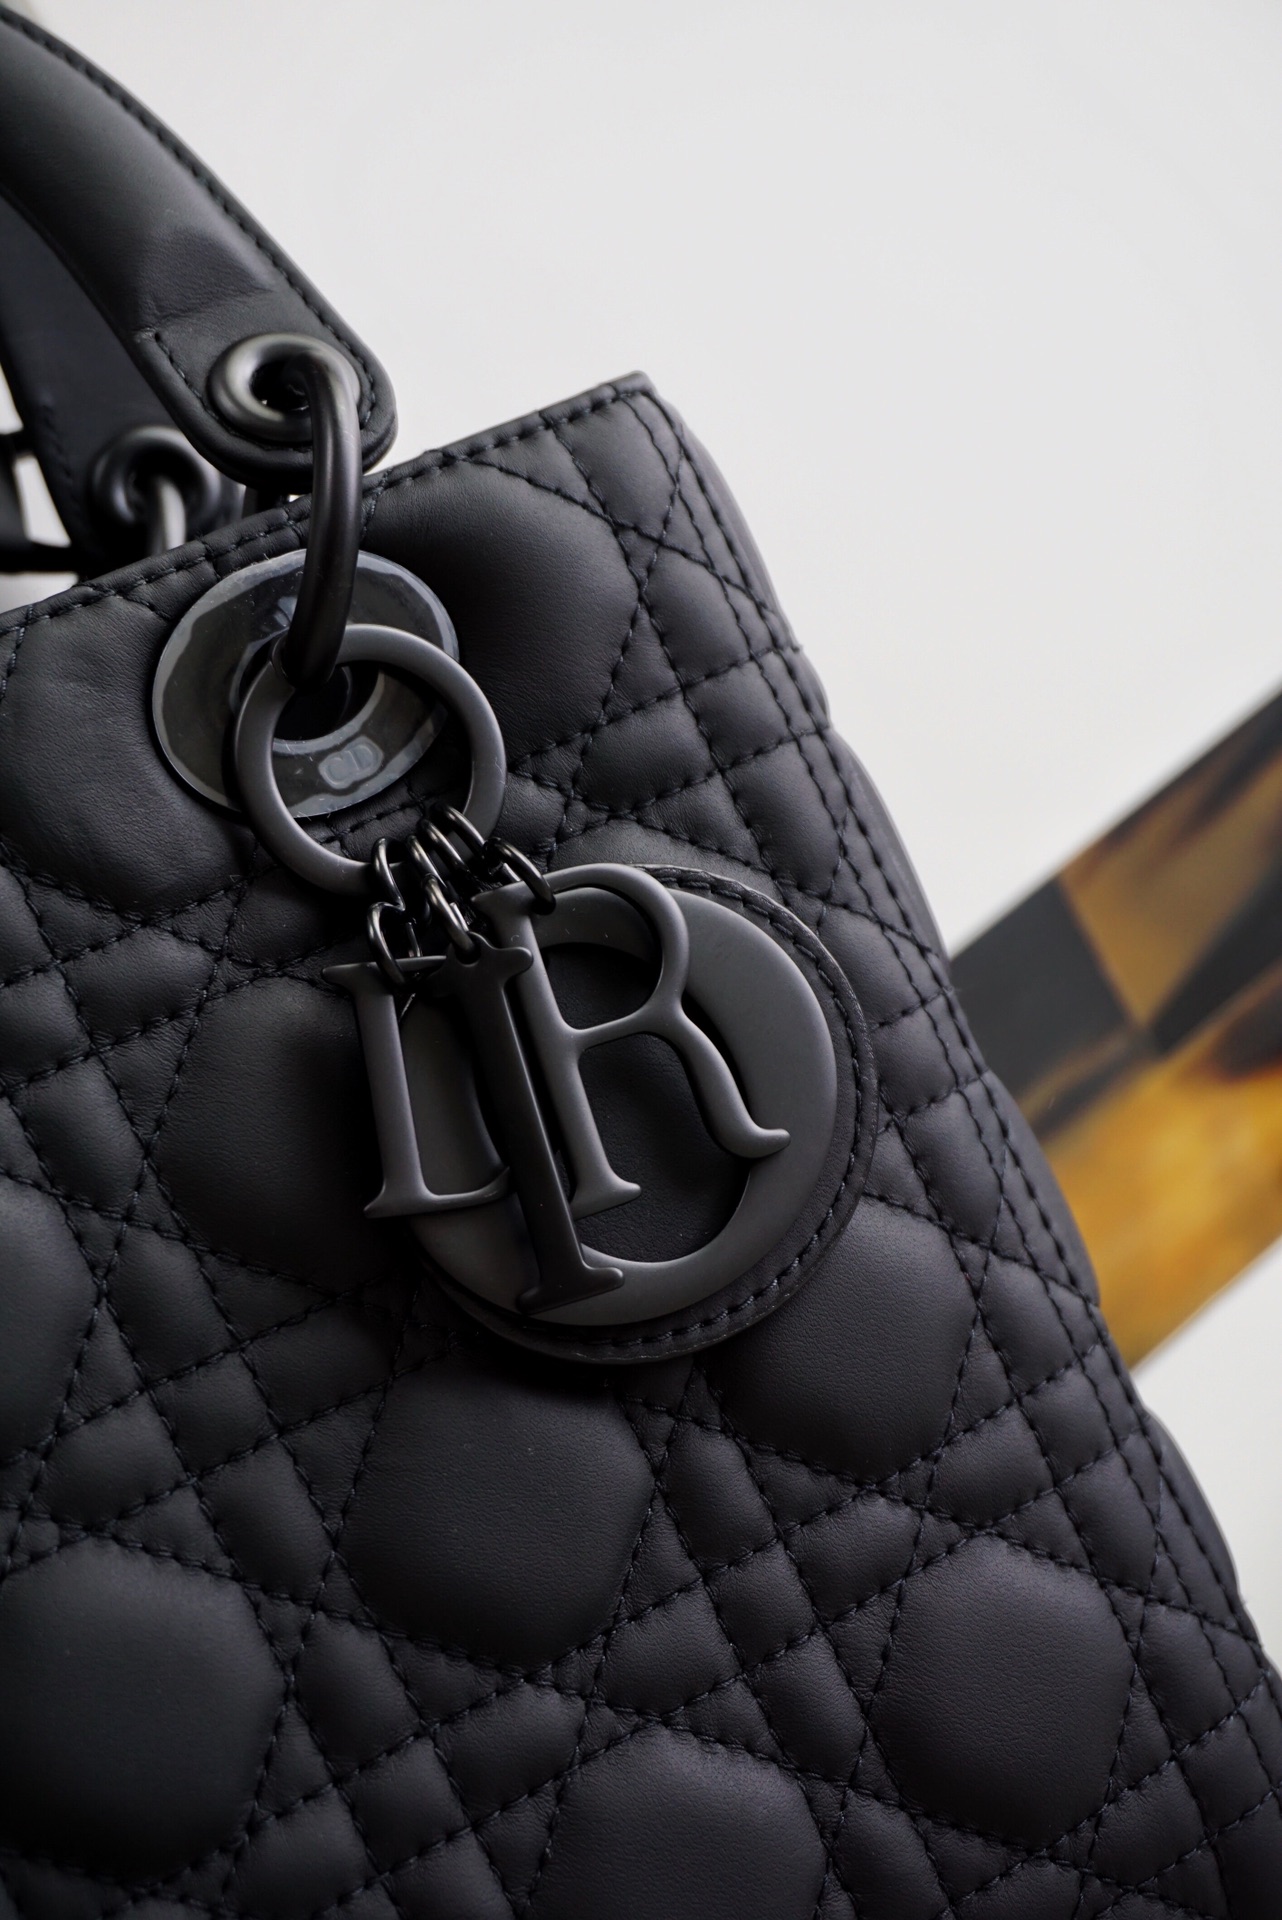 Túi Dior Lady M Small Bag  khoá so black Original